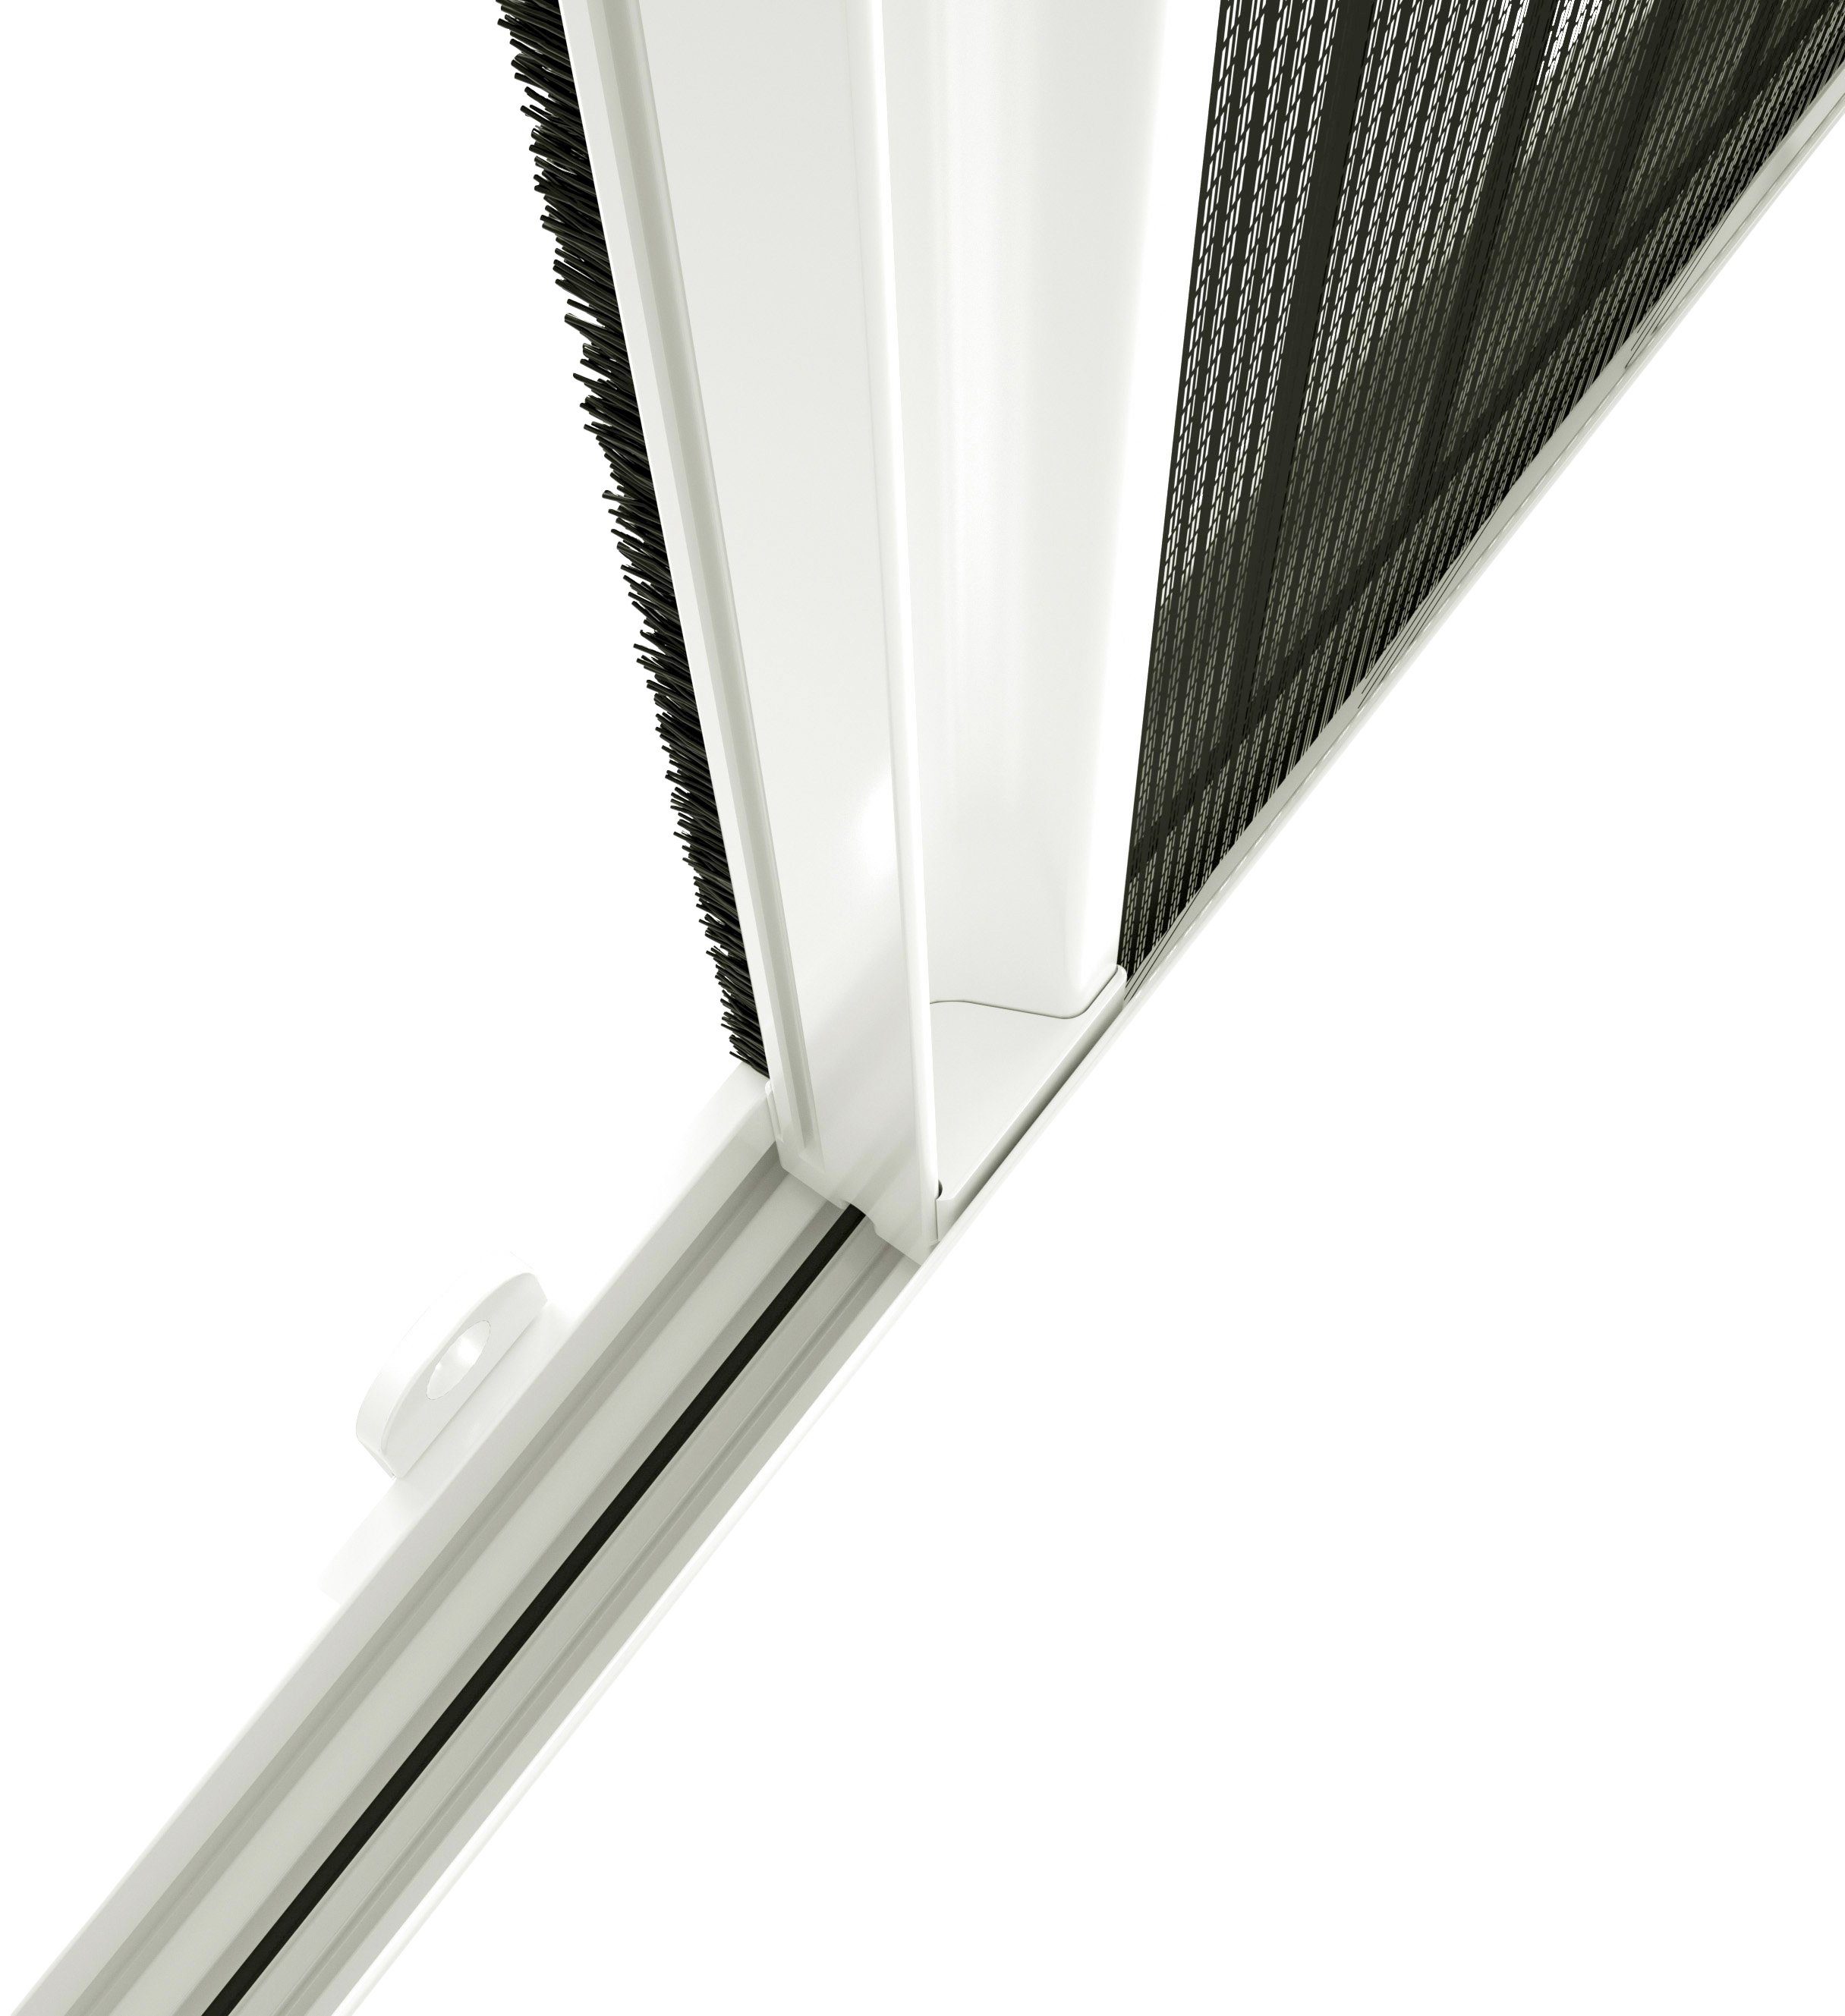 BxH: cm transparent, für Dachfenster, 160x180 Insektenschutzrollo verschraubt, weiß/schwarz, international, hecht